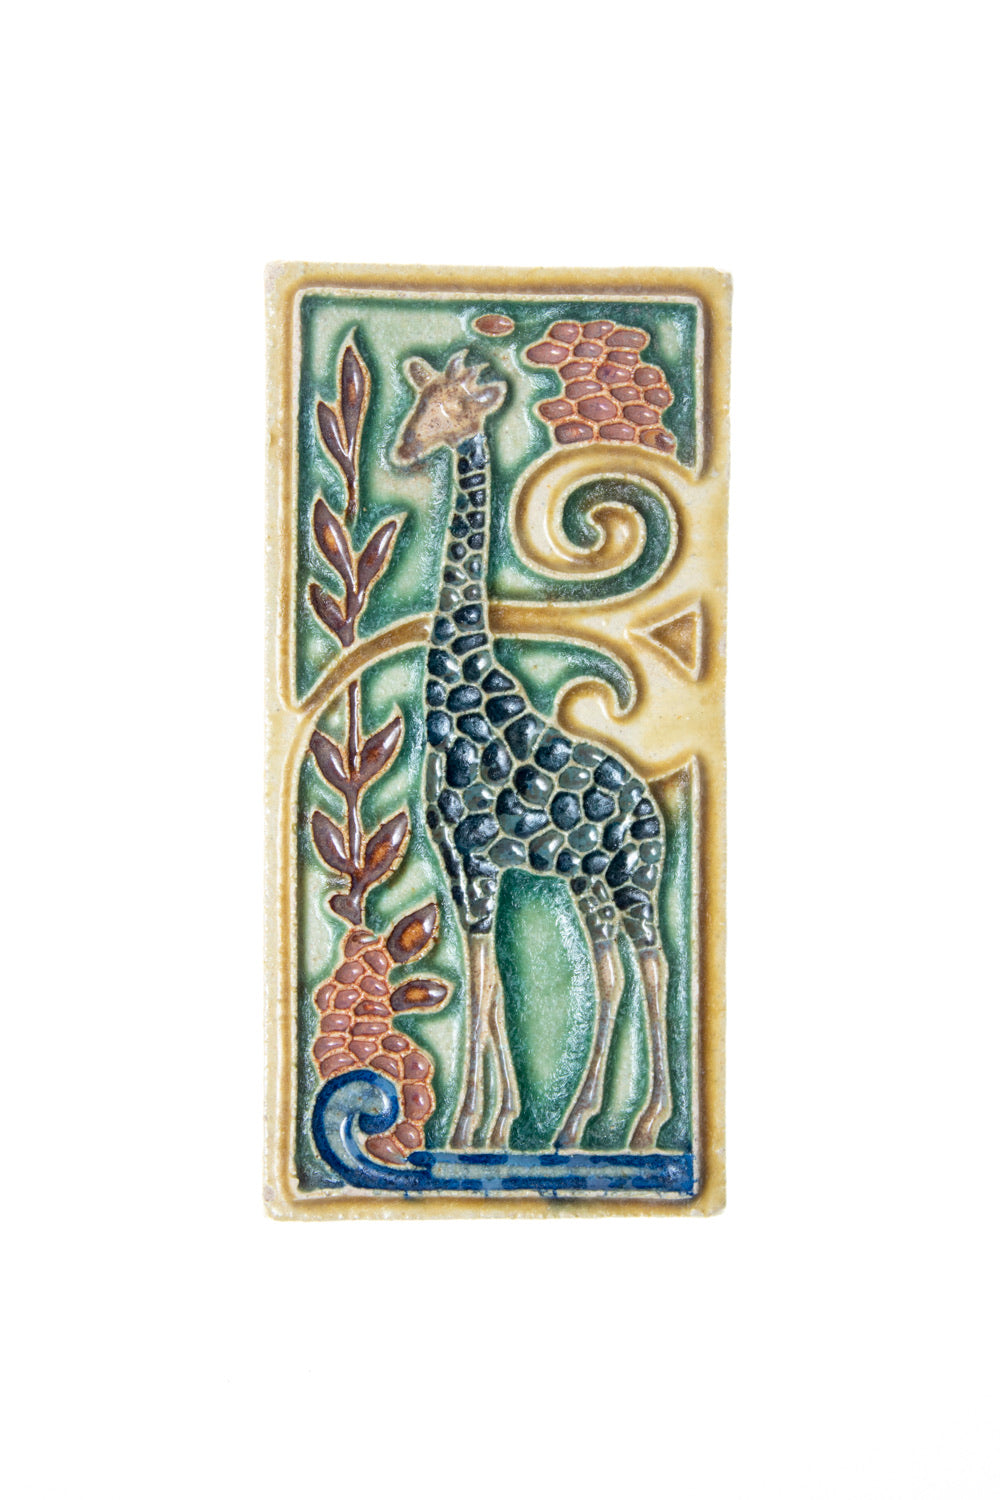 Nice royal delft tile with giraffe